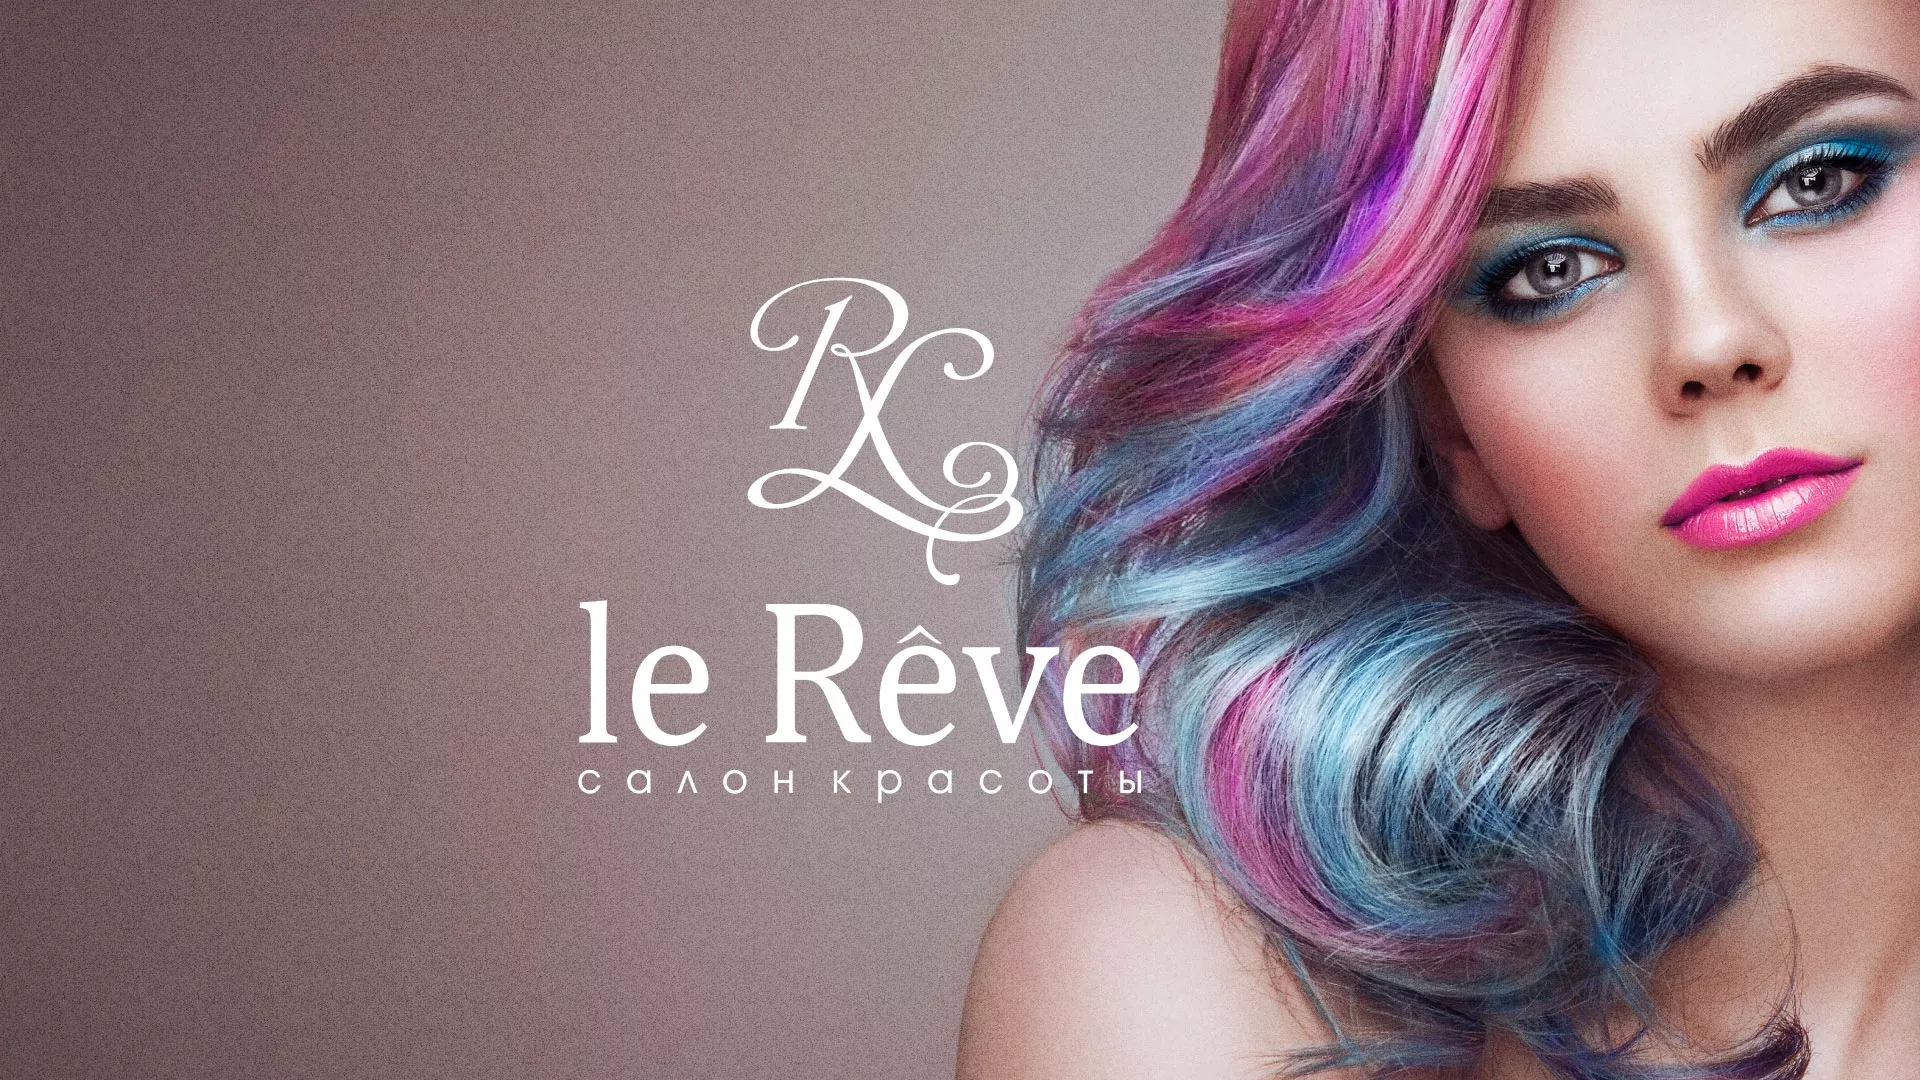 Создание сайта для салона красоты «Le Reve» в Красноярске